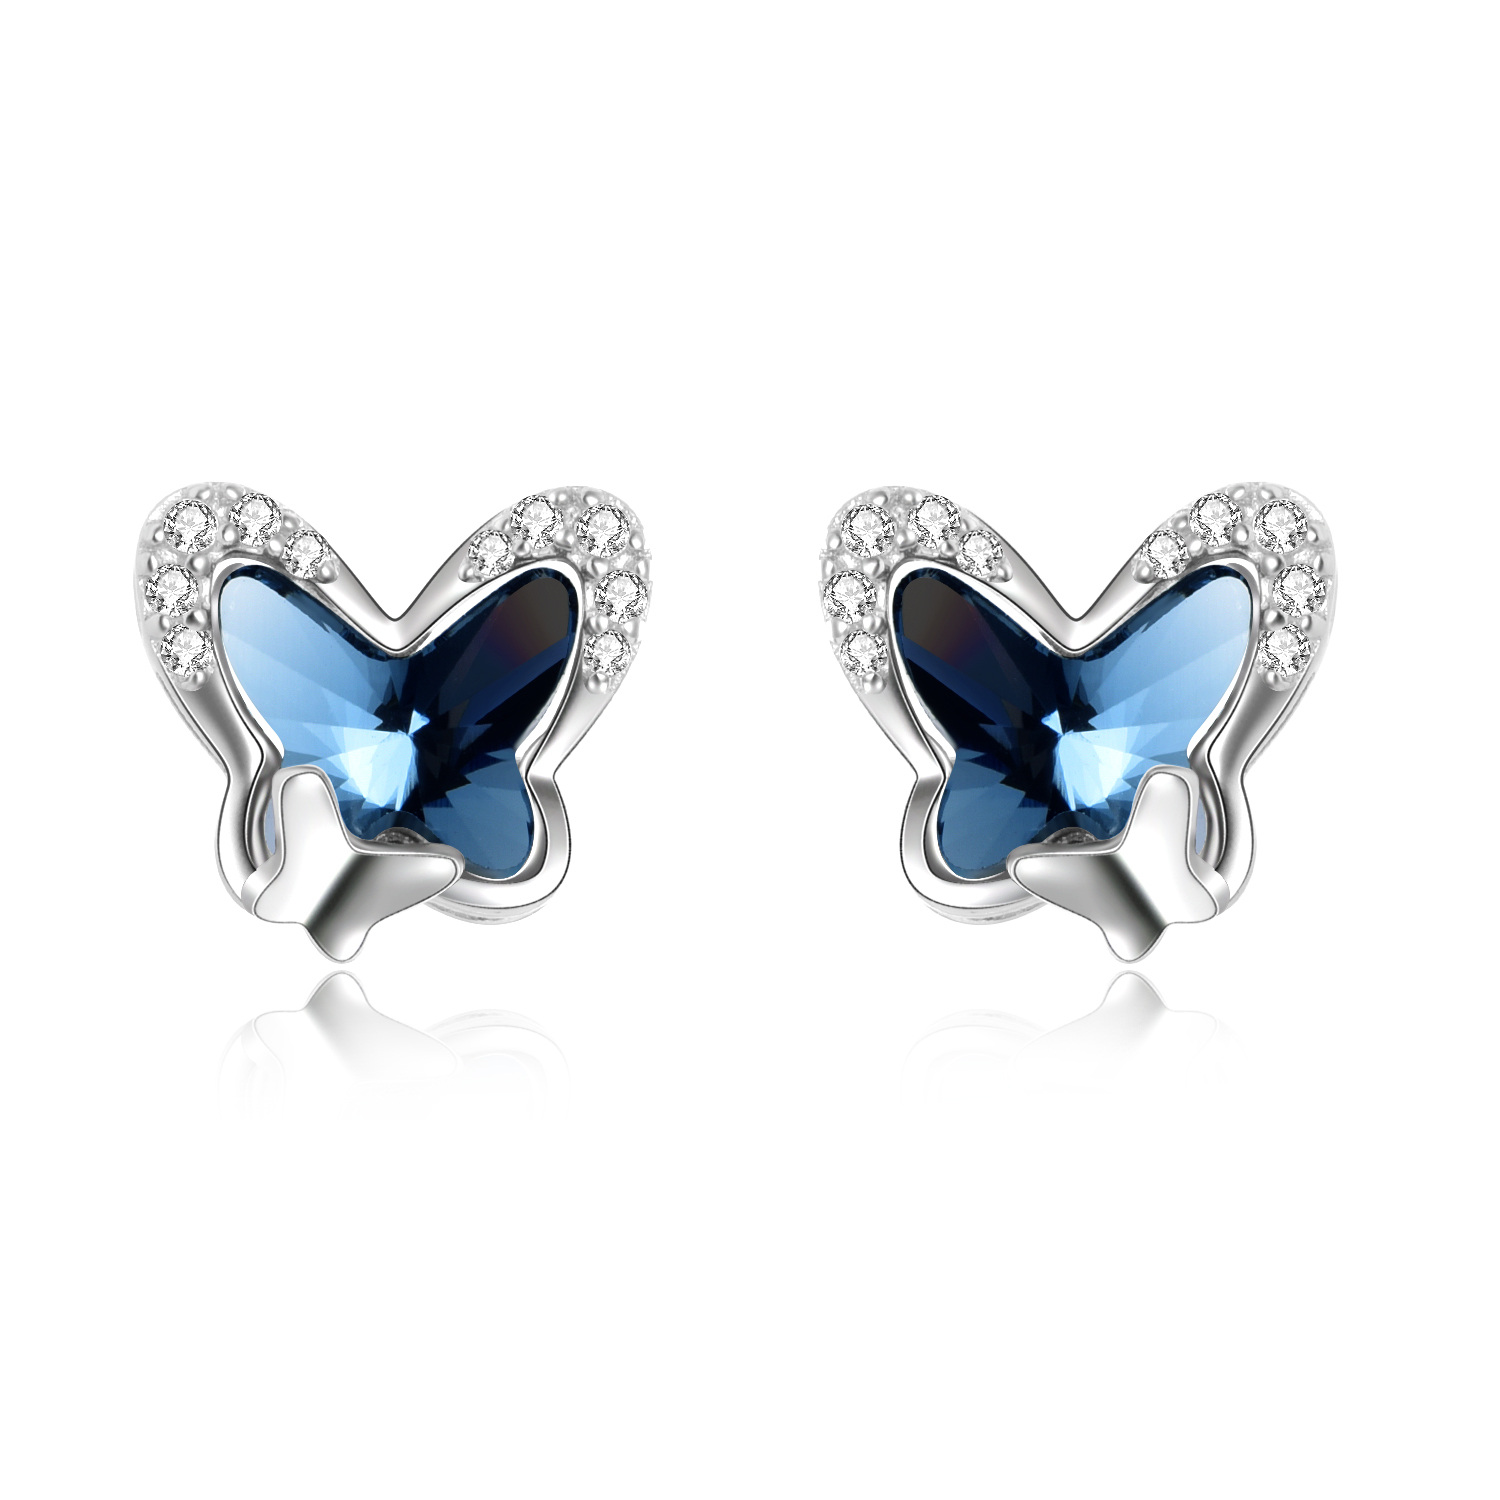 2f4d3182b63a48745c48392fcd397ca9PYE03581 - 925 Sterling Silver Butterfly Stud Earrings Hypoallergenic Earring Fine Jewelry Gift for Women Girls